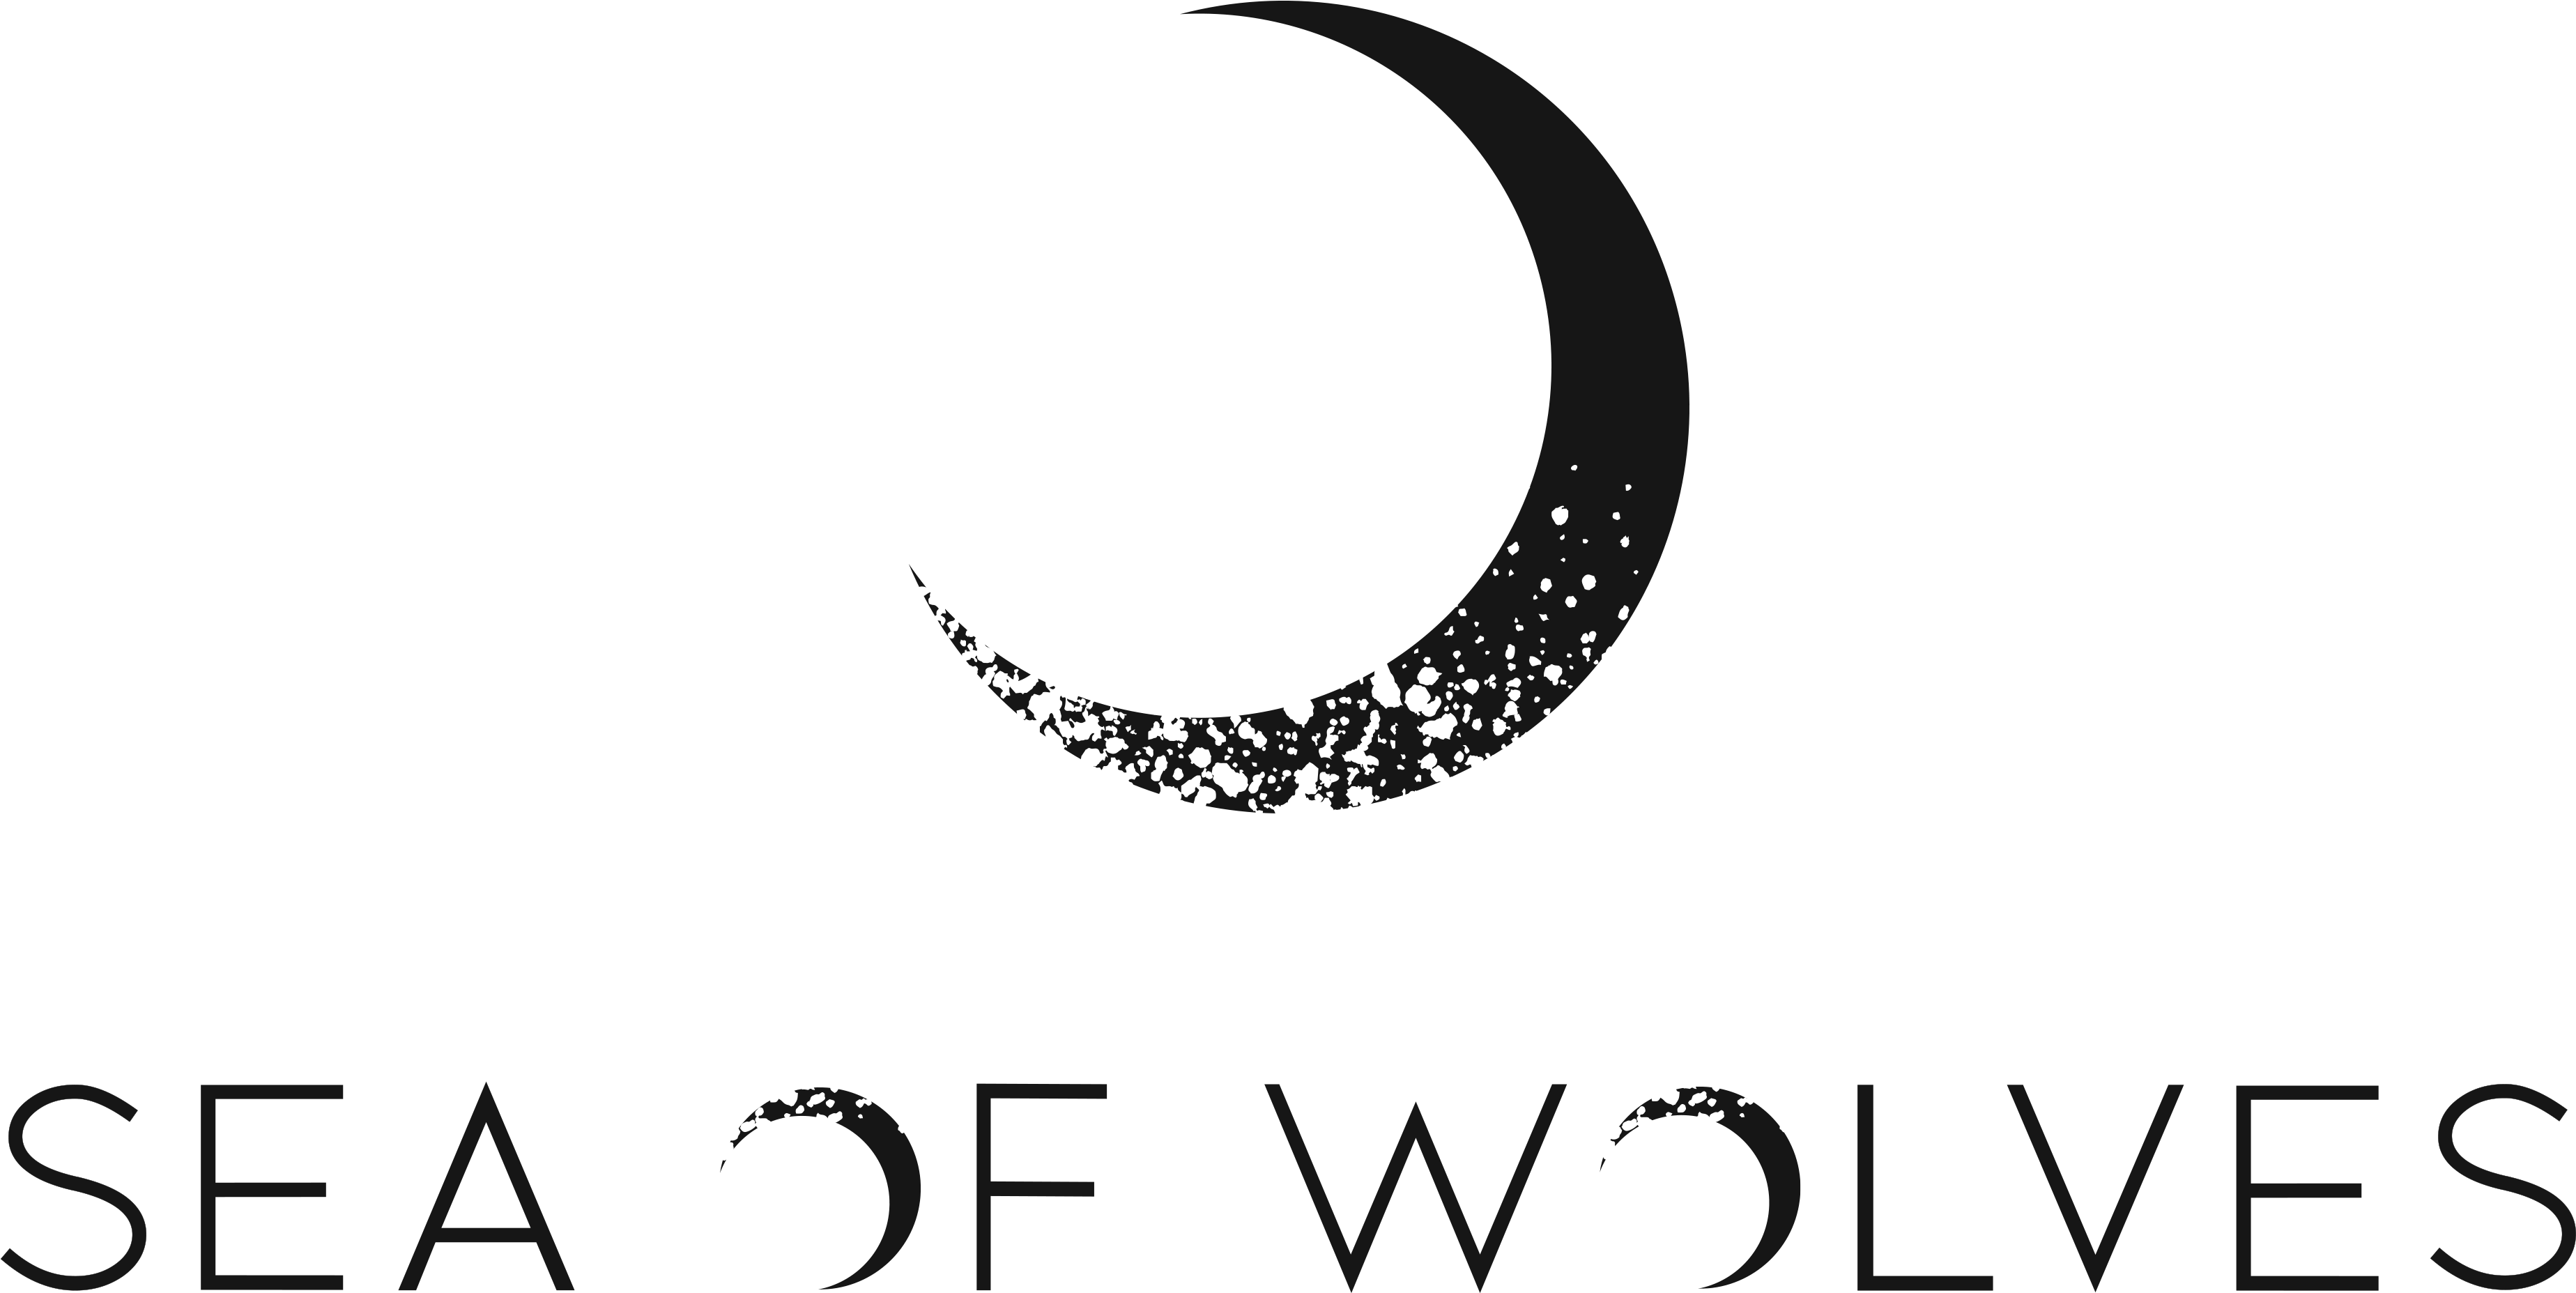 Moon Sea Logo Clipart (3750x1925), Png Download